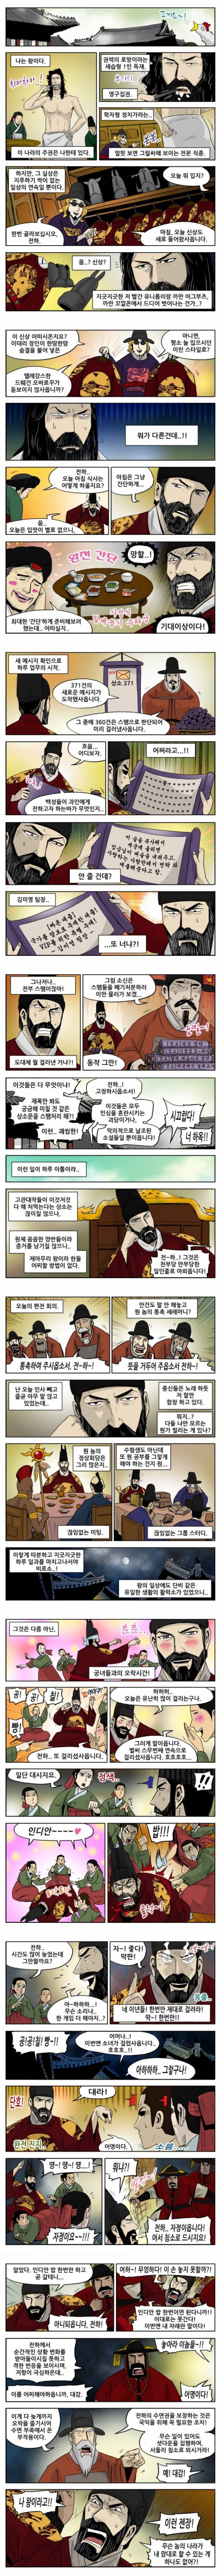 조선시대 왕의 하루.manwha